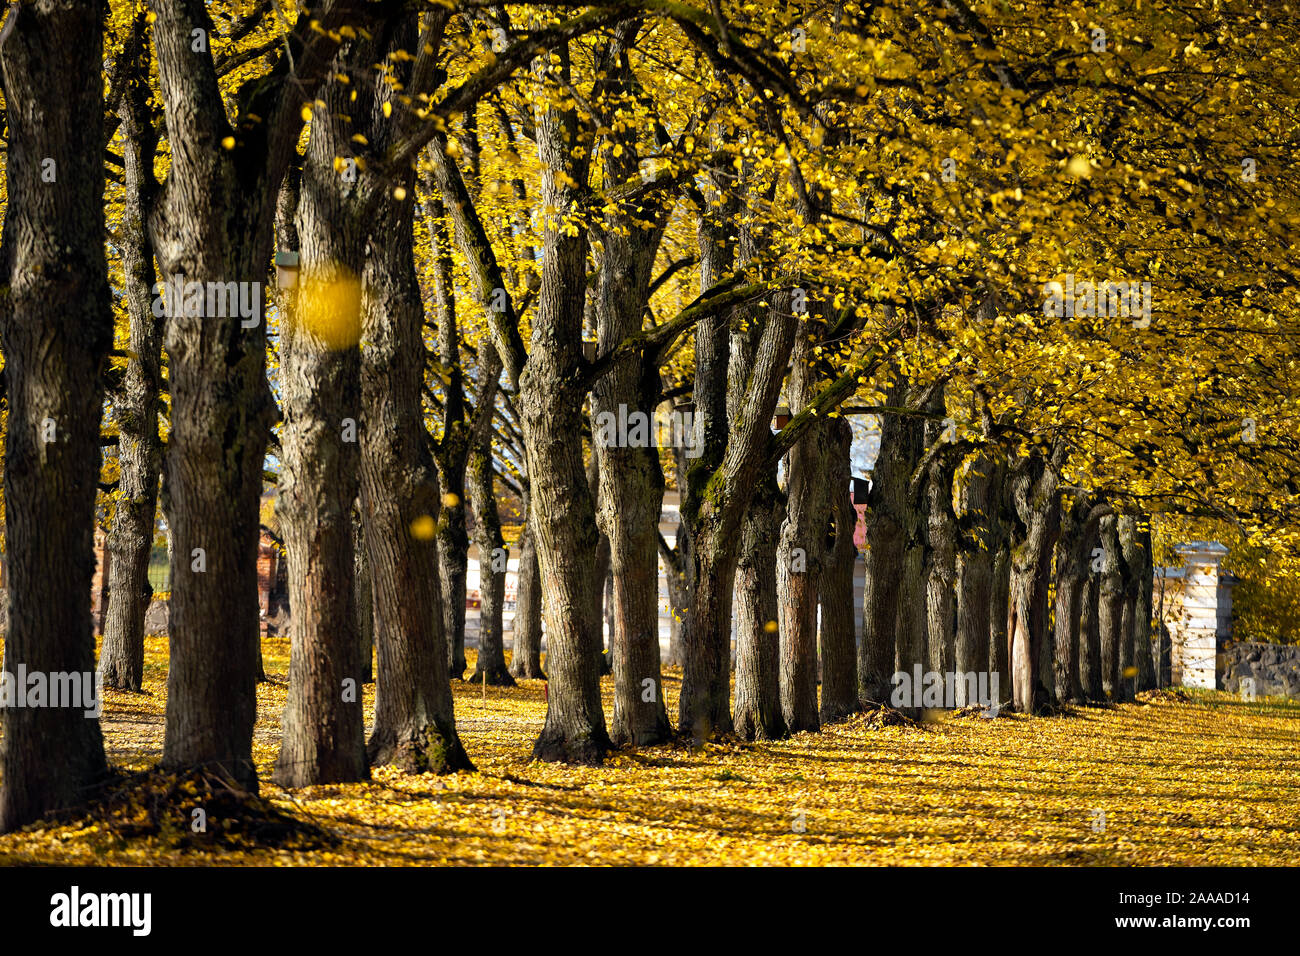 Maravilloso Linden Avenue, en una antigua mansión en un soleado día de octubre. Las hojas amarillas de los árboles están cayendo. Foto de stock